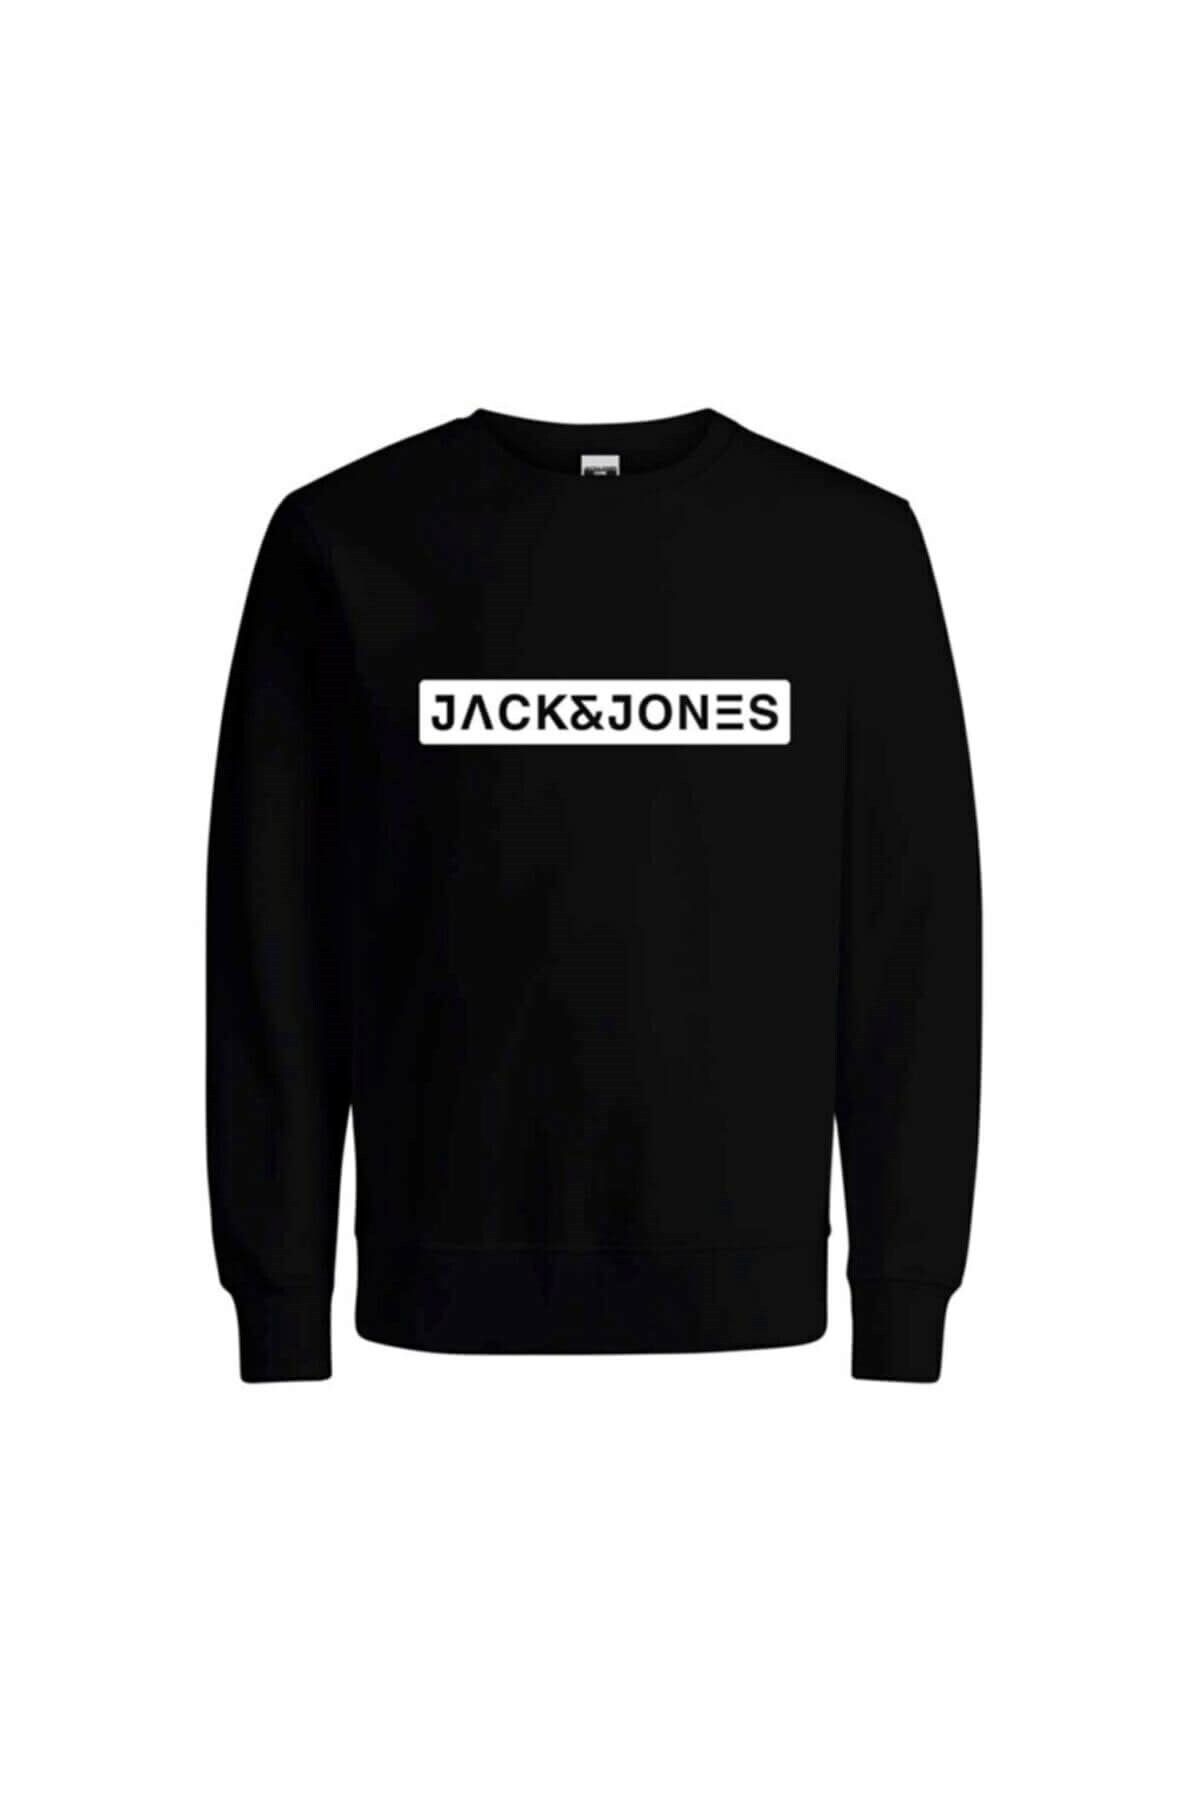 Jack & Jones Jcoreason Erkek Sweatshirt - 12201845